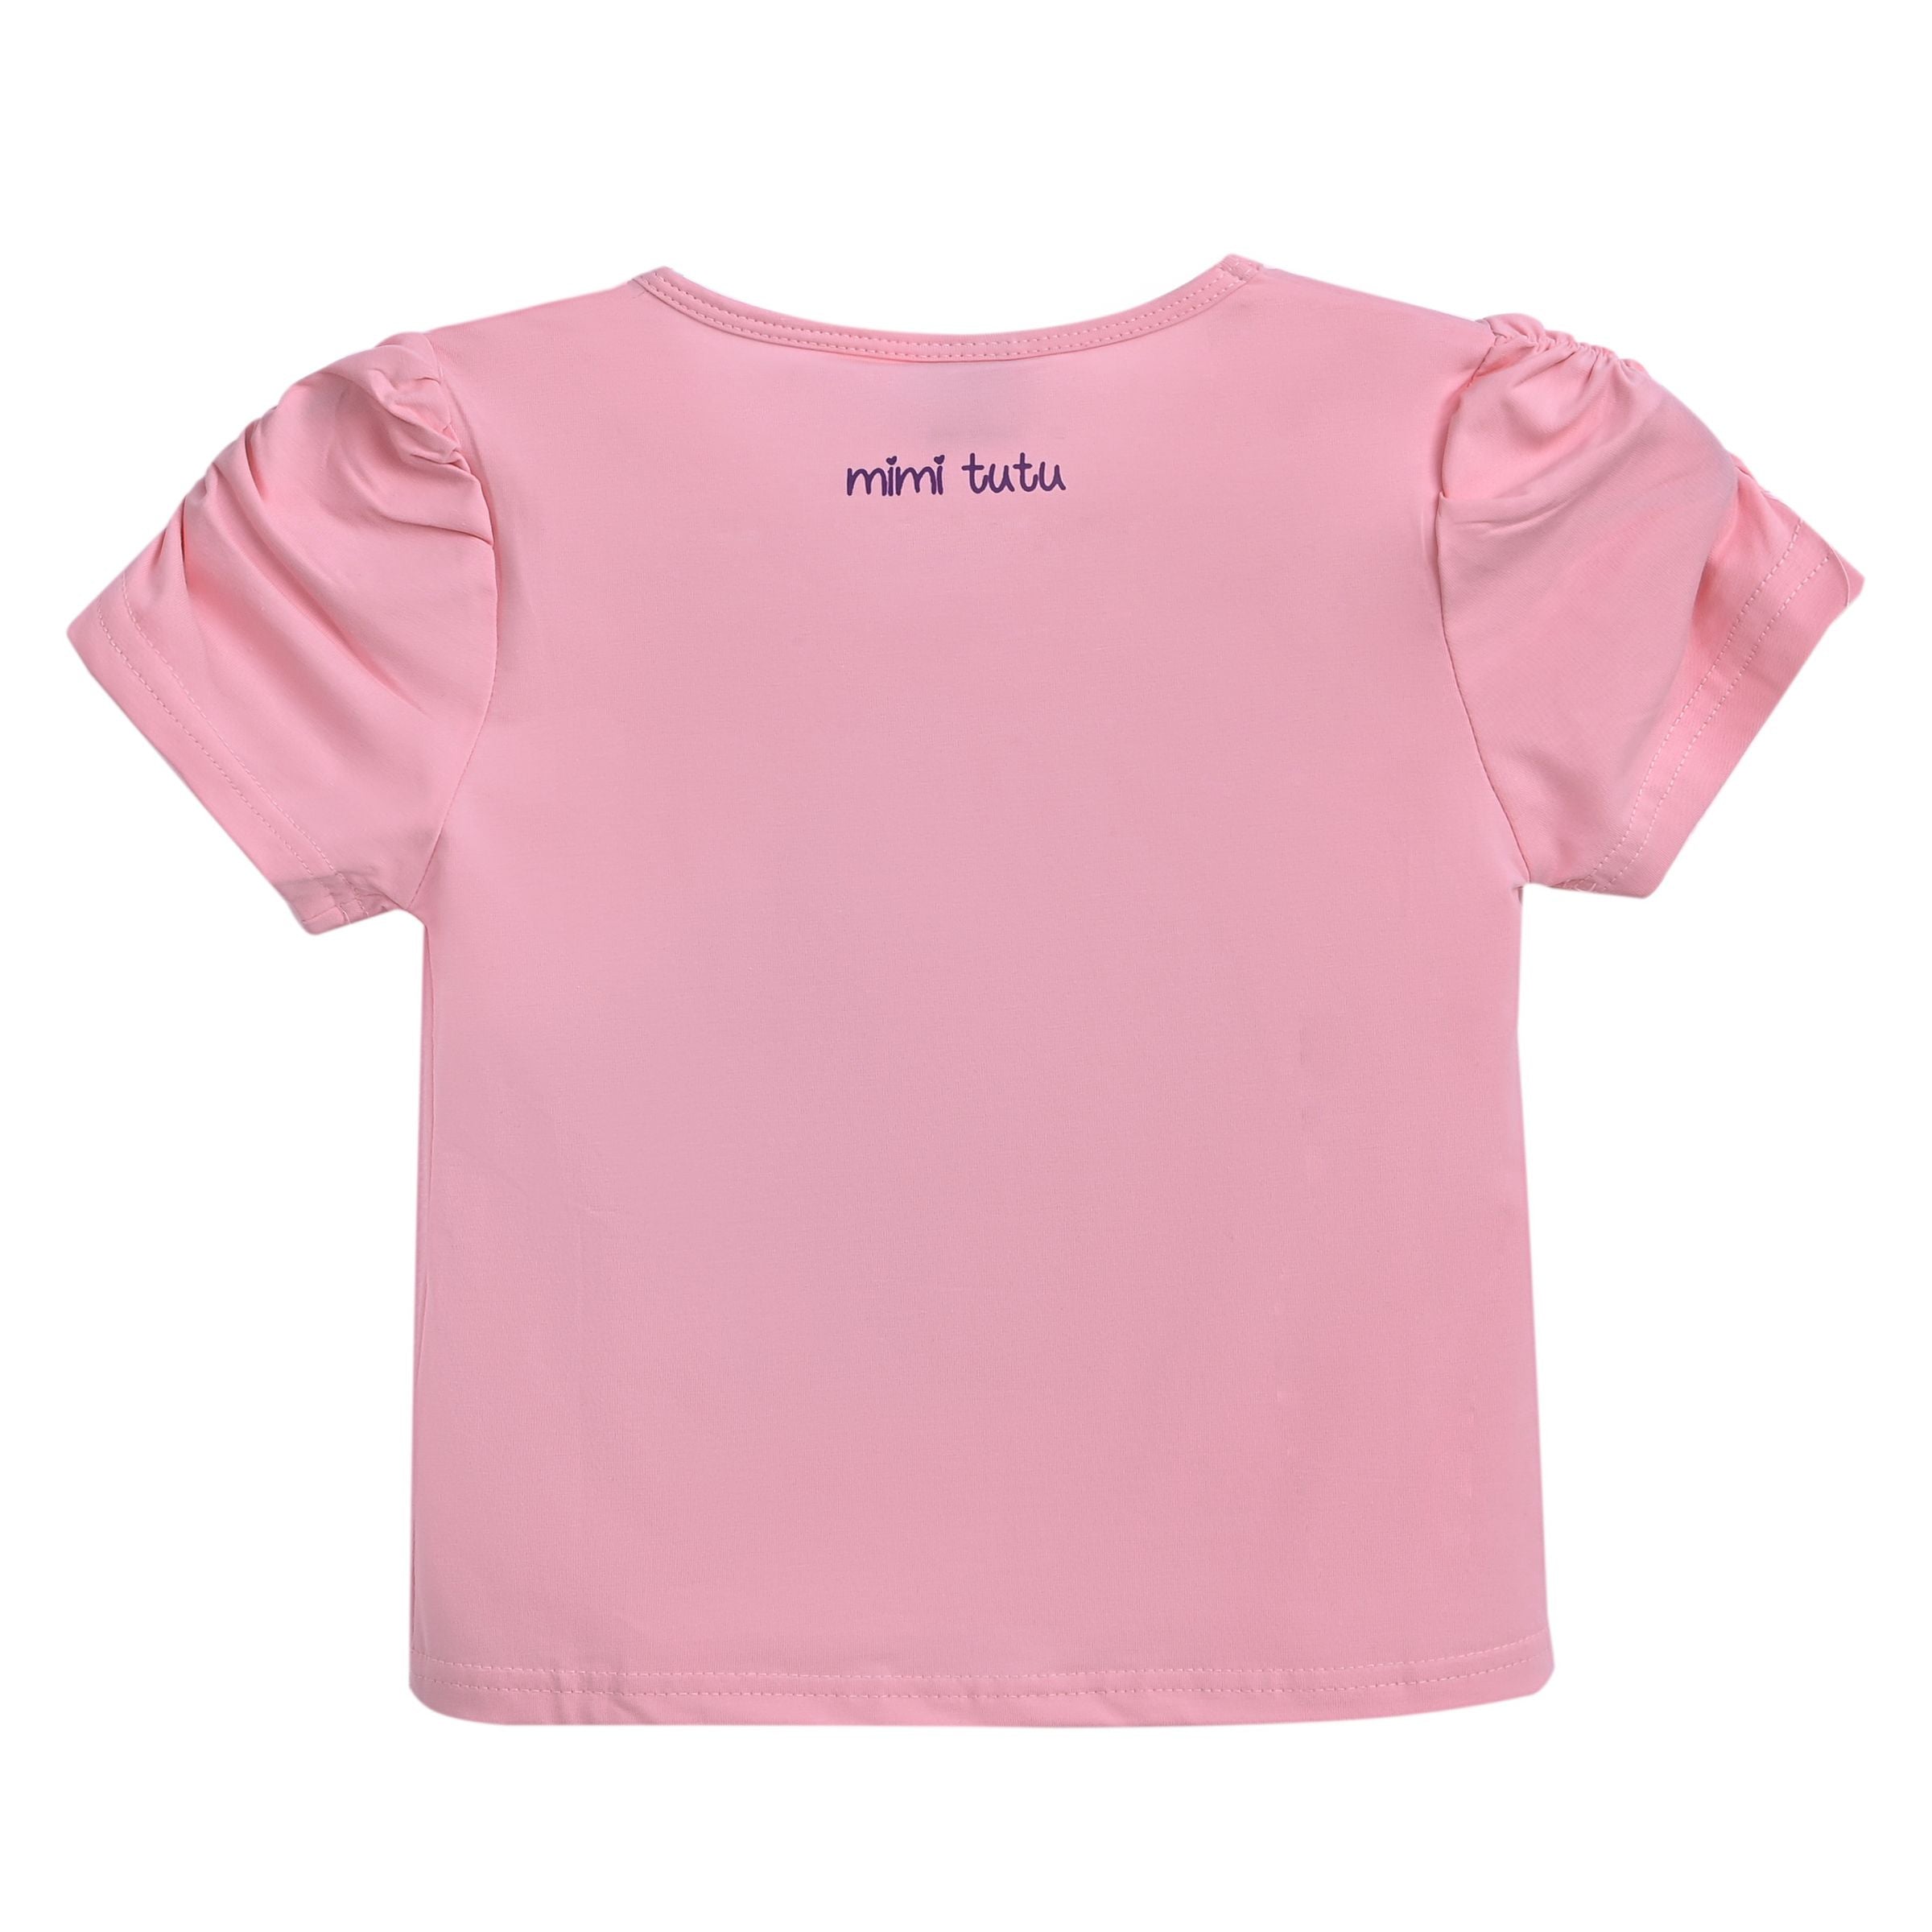 kids-atelier-mimi-tutu-kid-baby-girl-pink-puppy-applique-t-shirt-mt4204-puppy-powder-pink